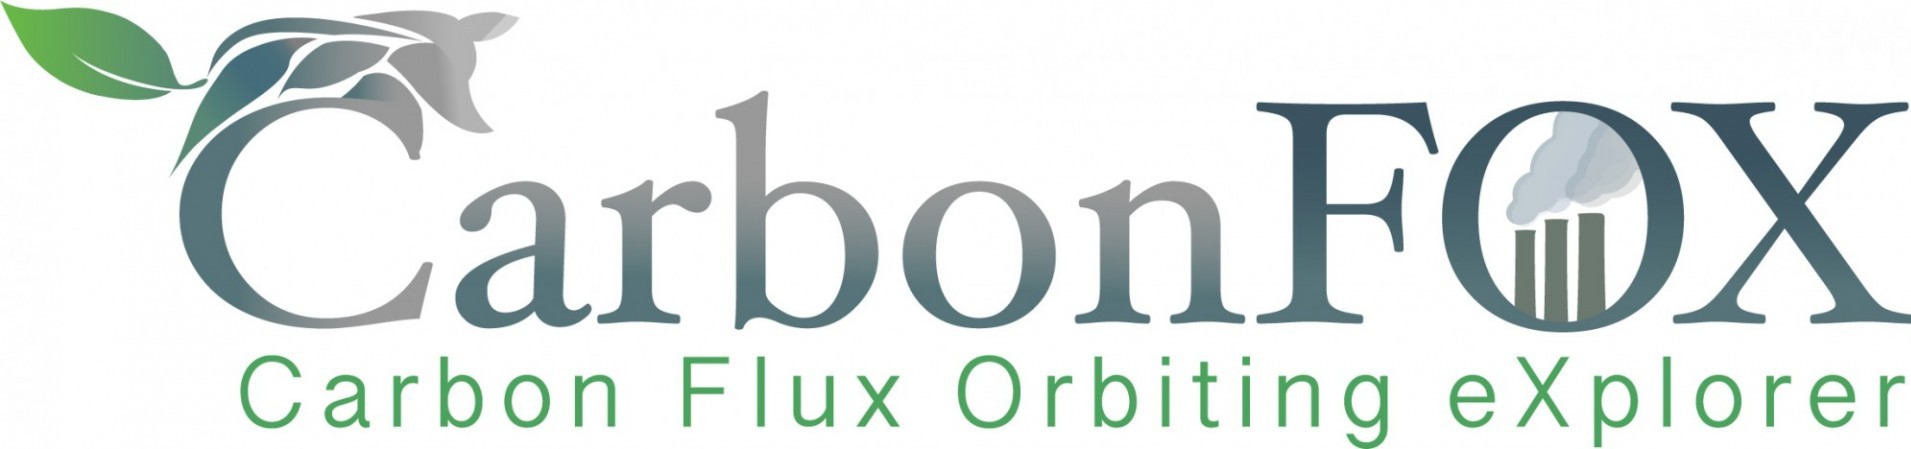 CarbonFOX mission logo